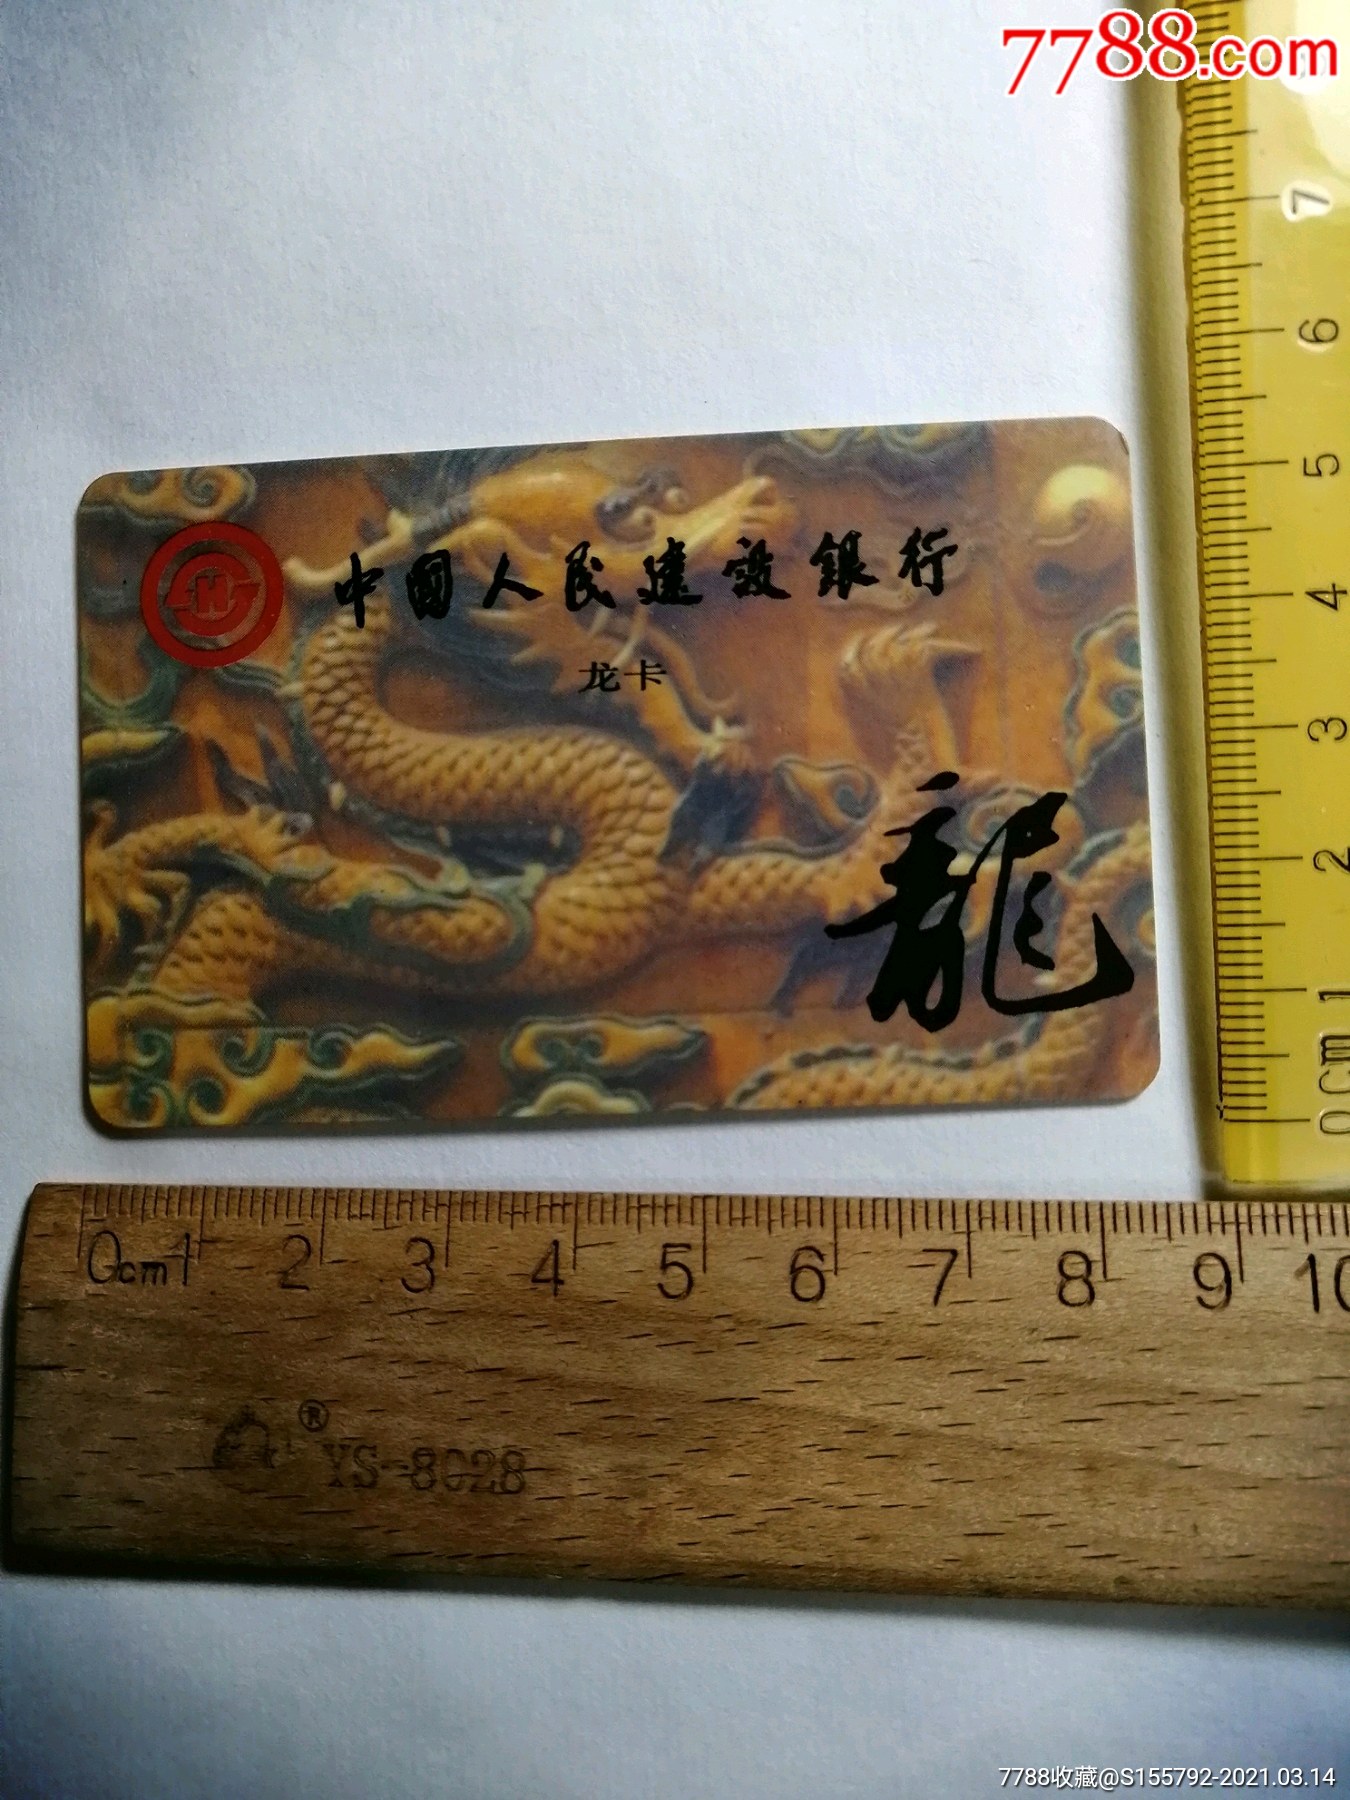 1995年历卡中国人民银行广告卡